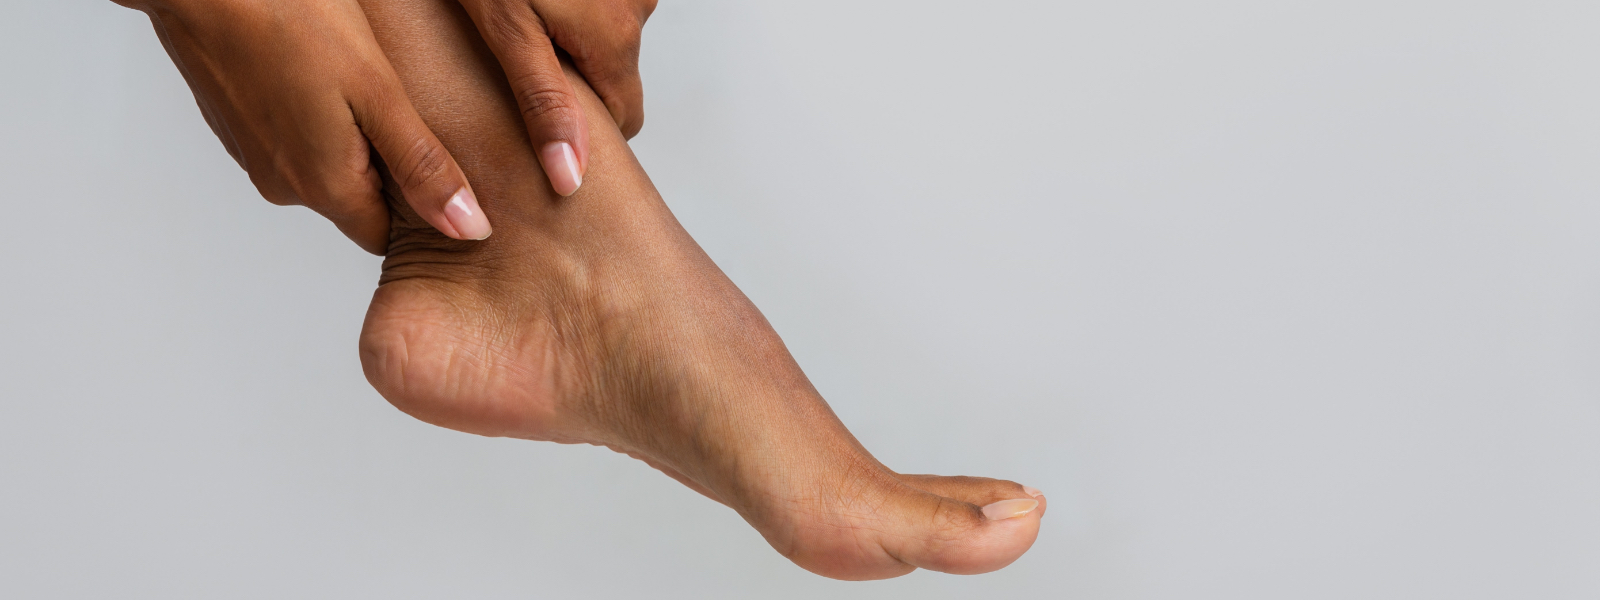 Foot & Ankle Deformities